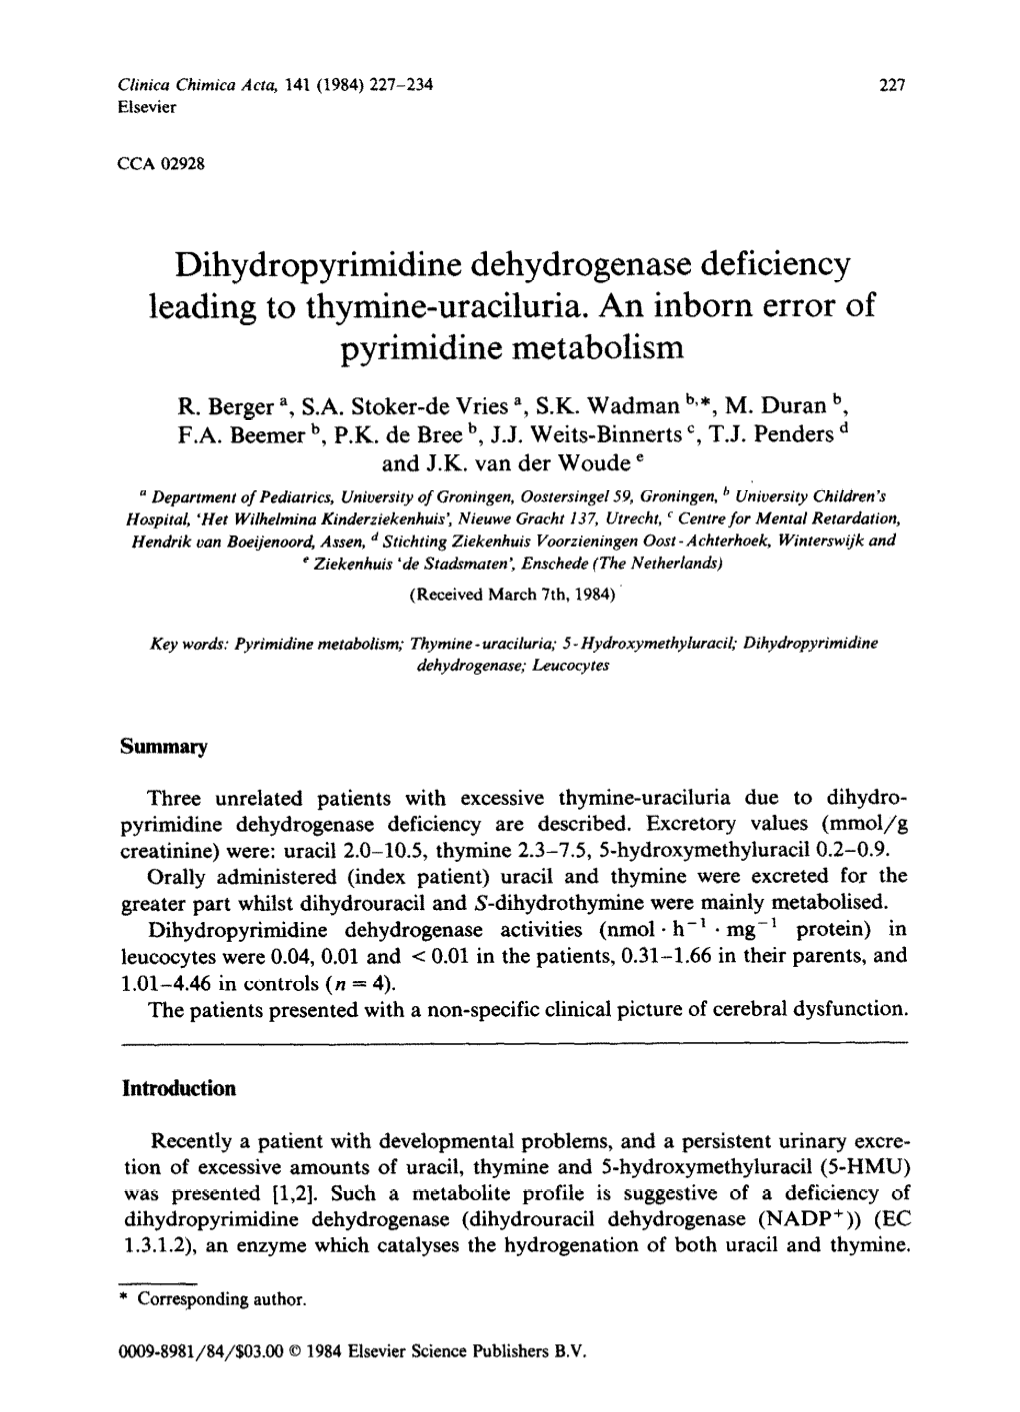 Dihydropyrimidine Dehydrogenase Deficiency Leading to Thymine-Uraciluria